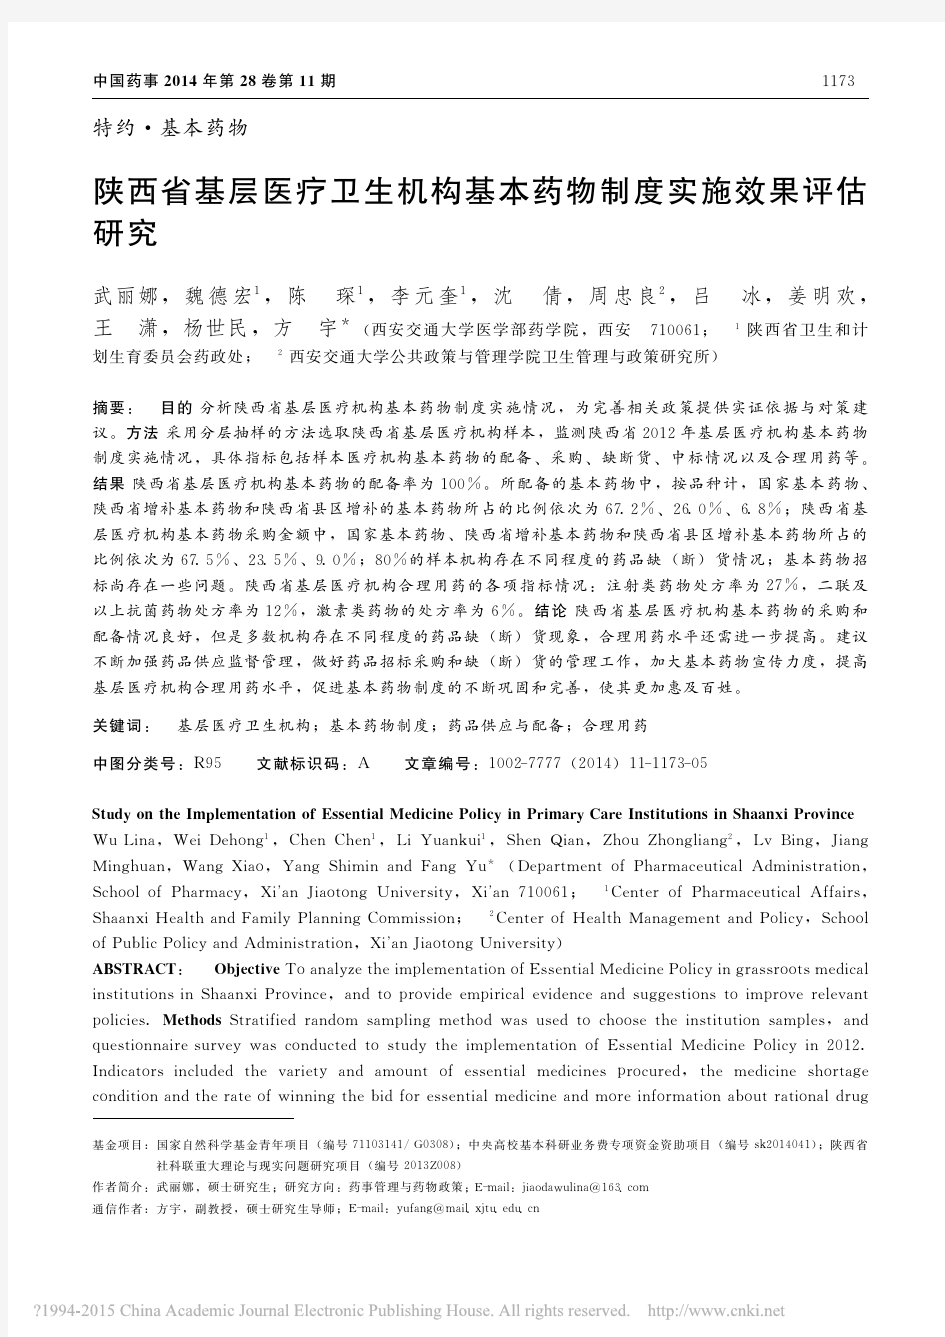 陕西省基层医疗卫生机构基本药物制度实施效果评估研究_武丽娜